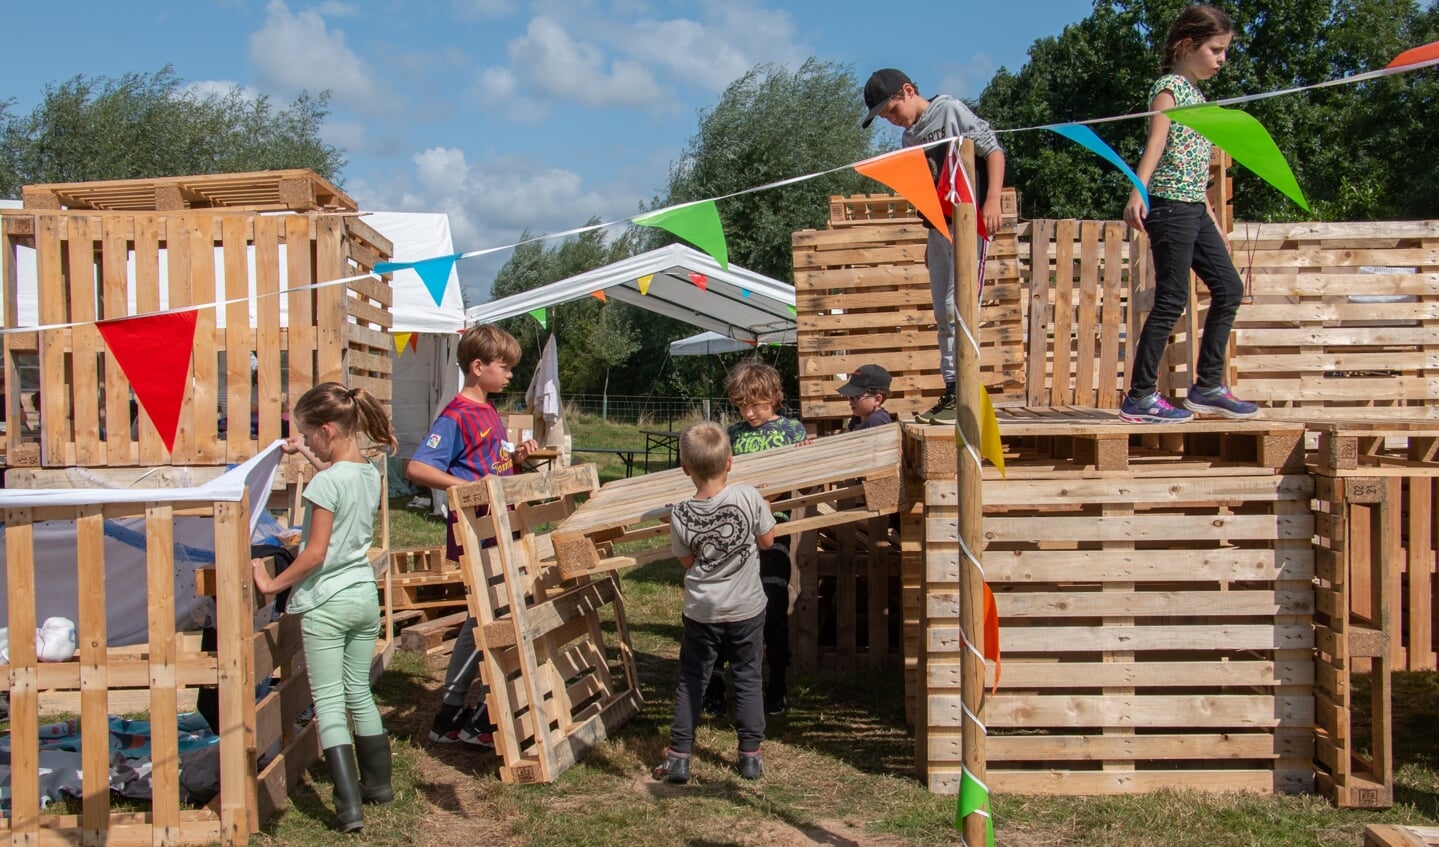 Kinderen werkten goed met elkaar samen om de hut zo mooi mogelijk te maken. Foto: Achterhoekfoto.nl/Liesbeth Spaansen